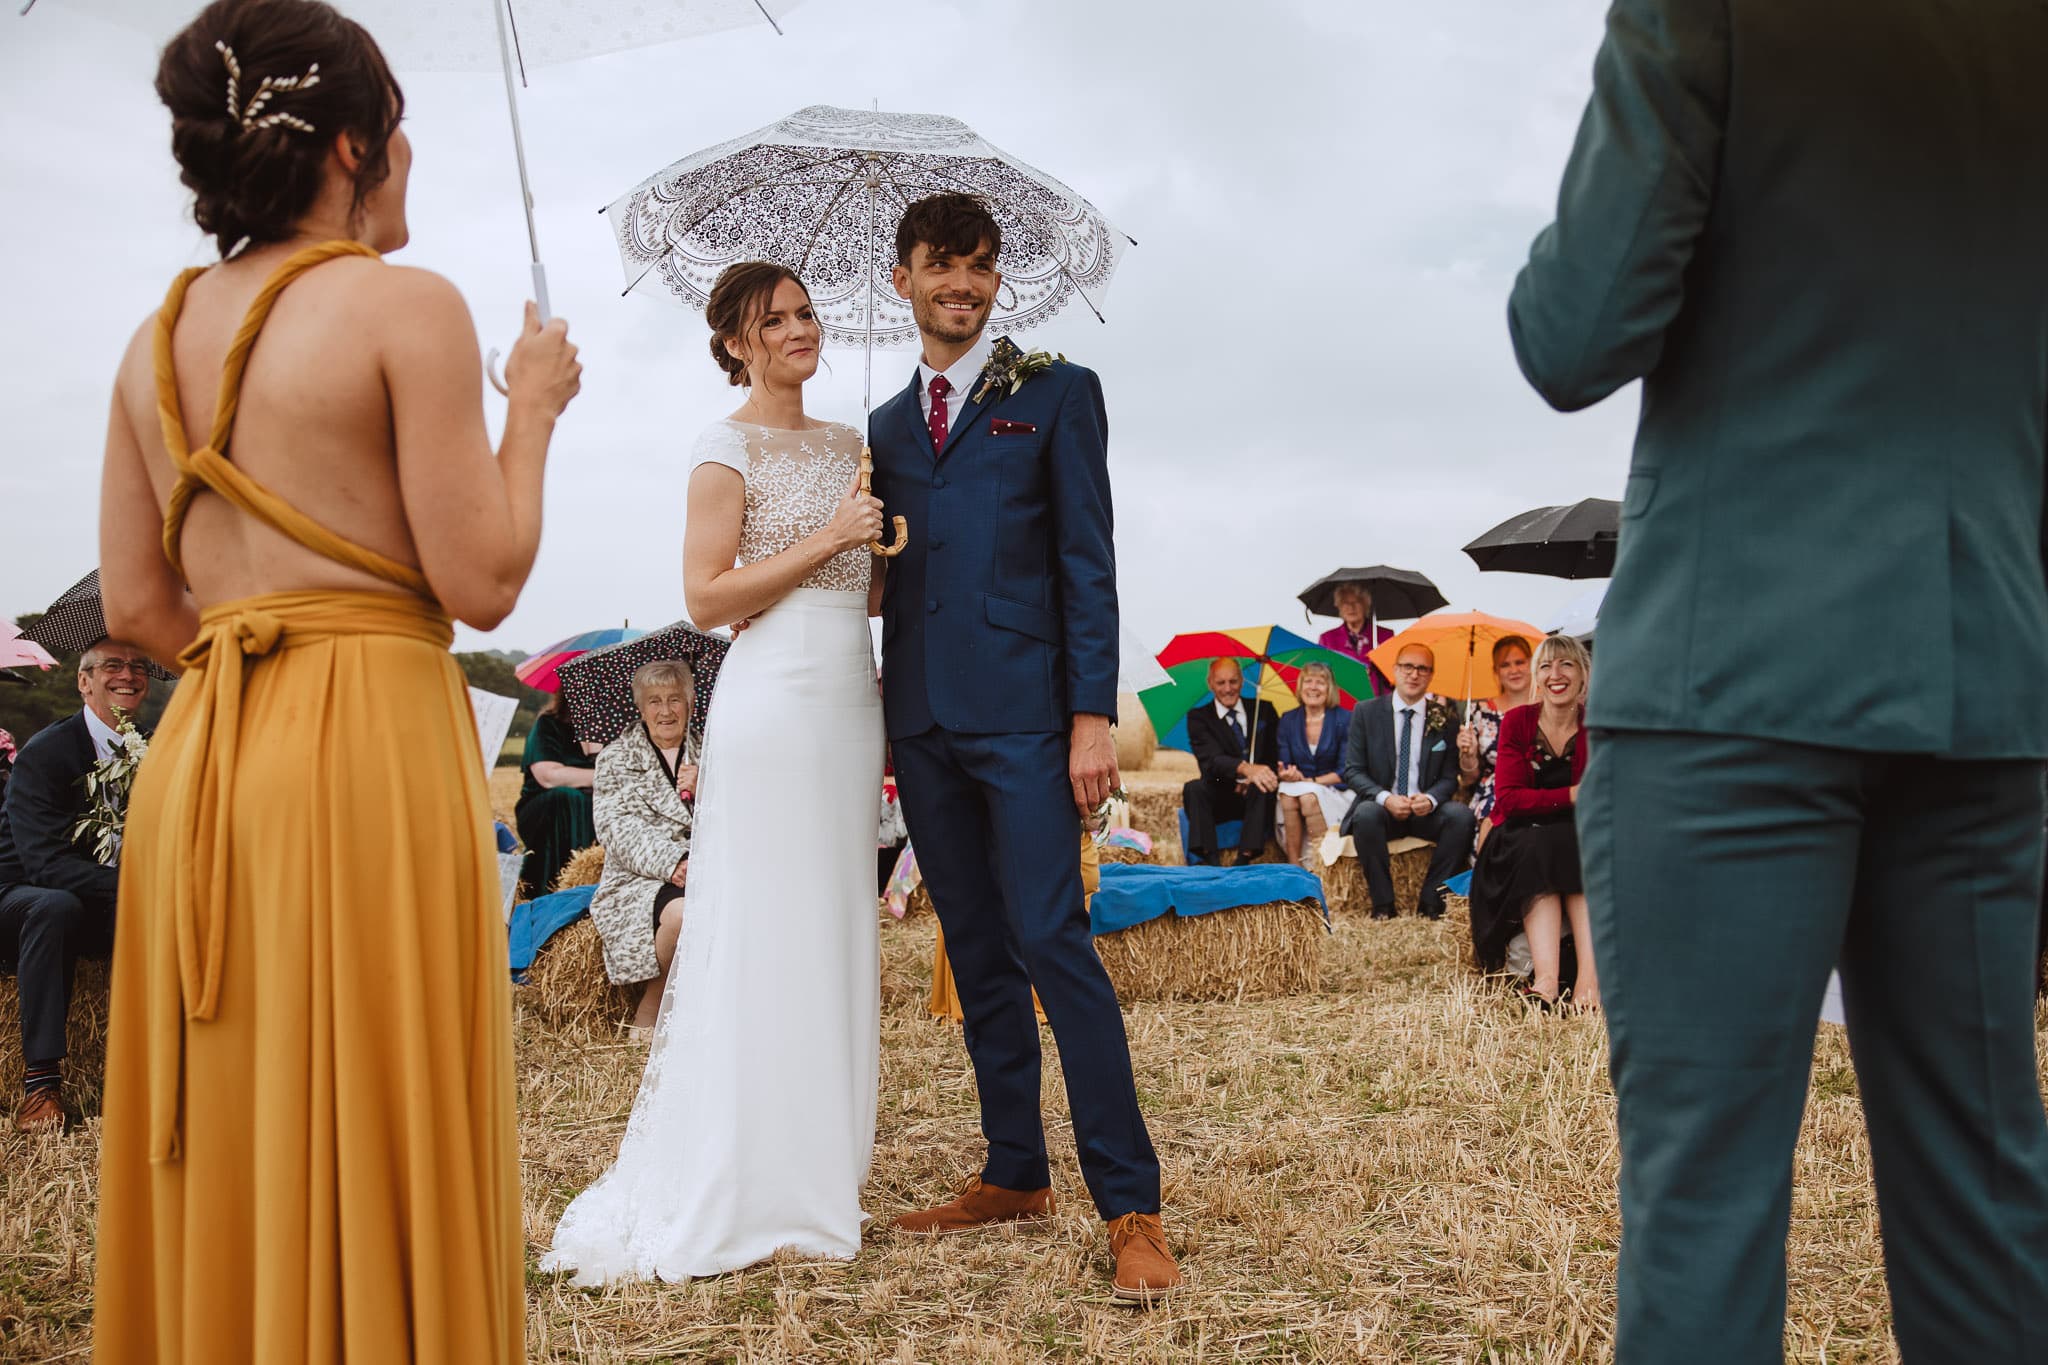 rainy outdoor wedding ceremony